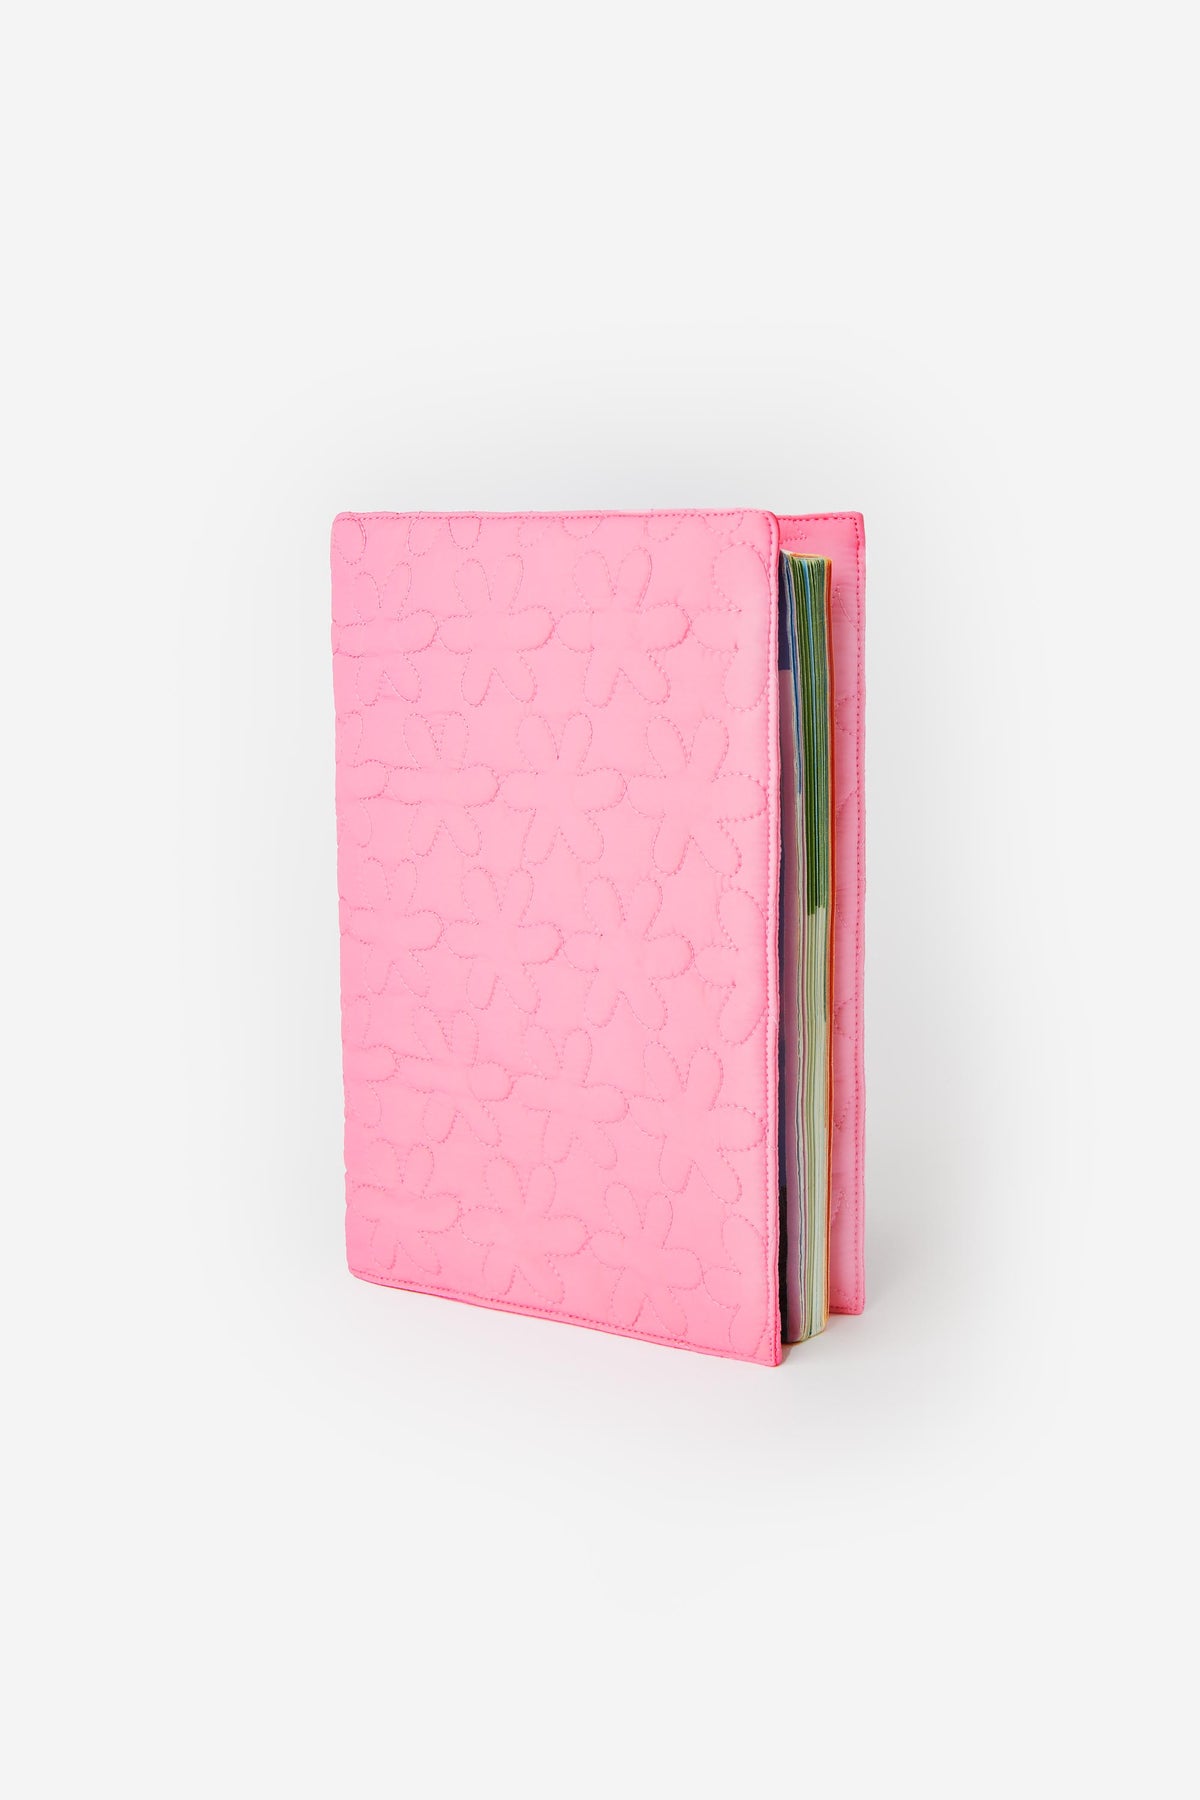 Protège cahier adapté au format carnet de santé. En nylon rose, matelassé motif fleurs.  26 paradis. 